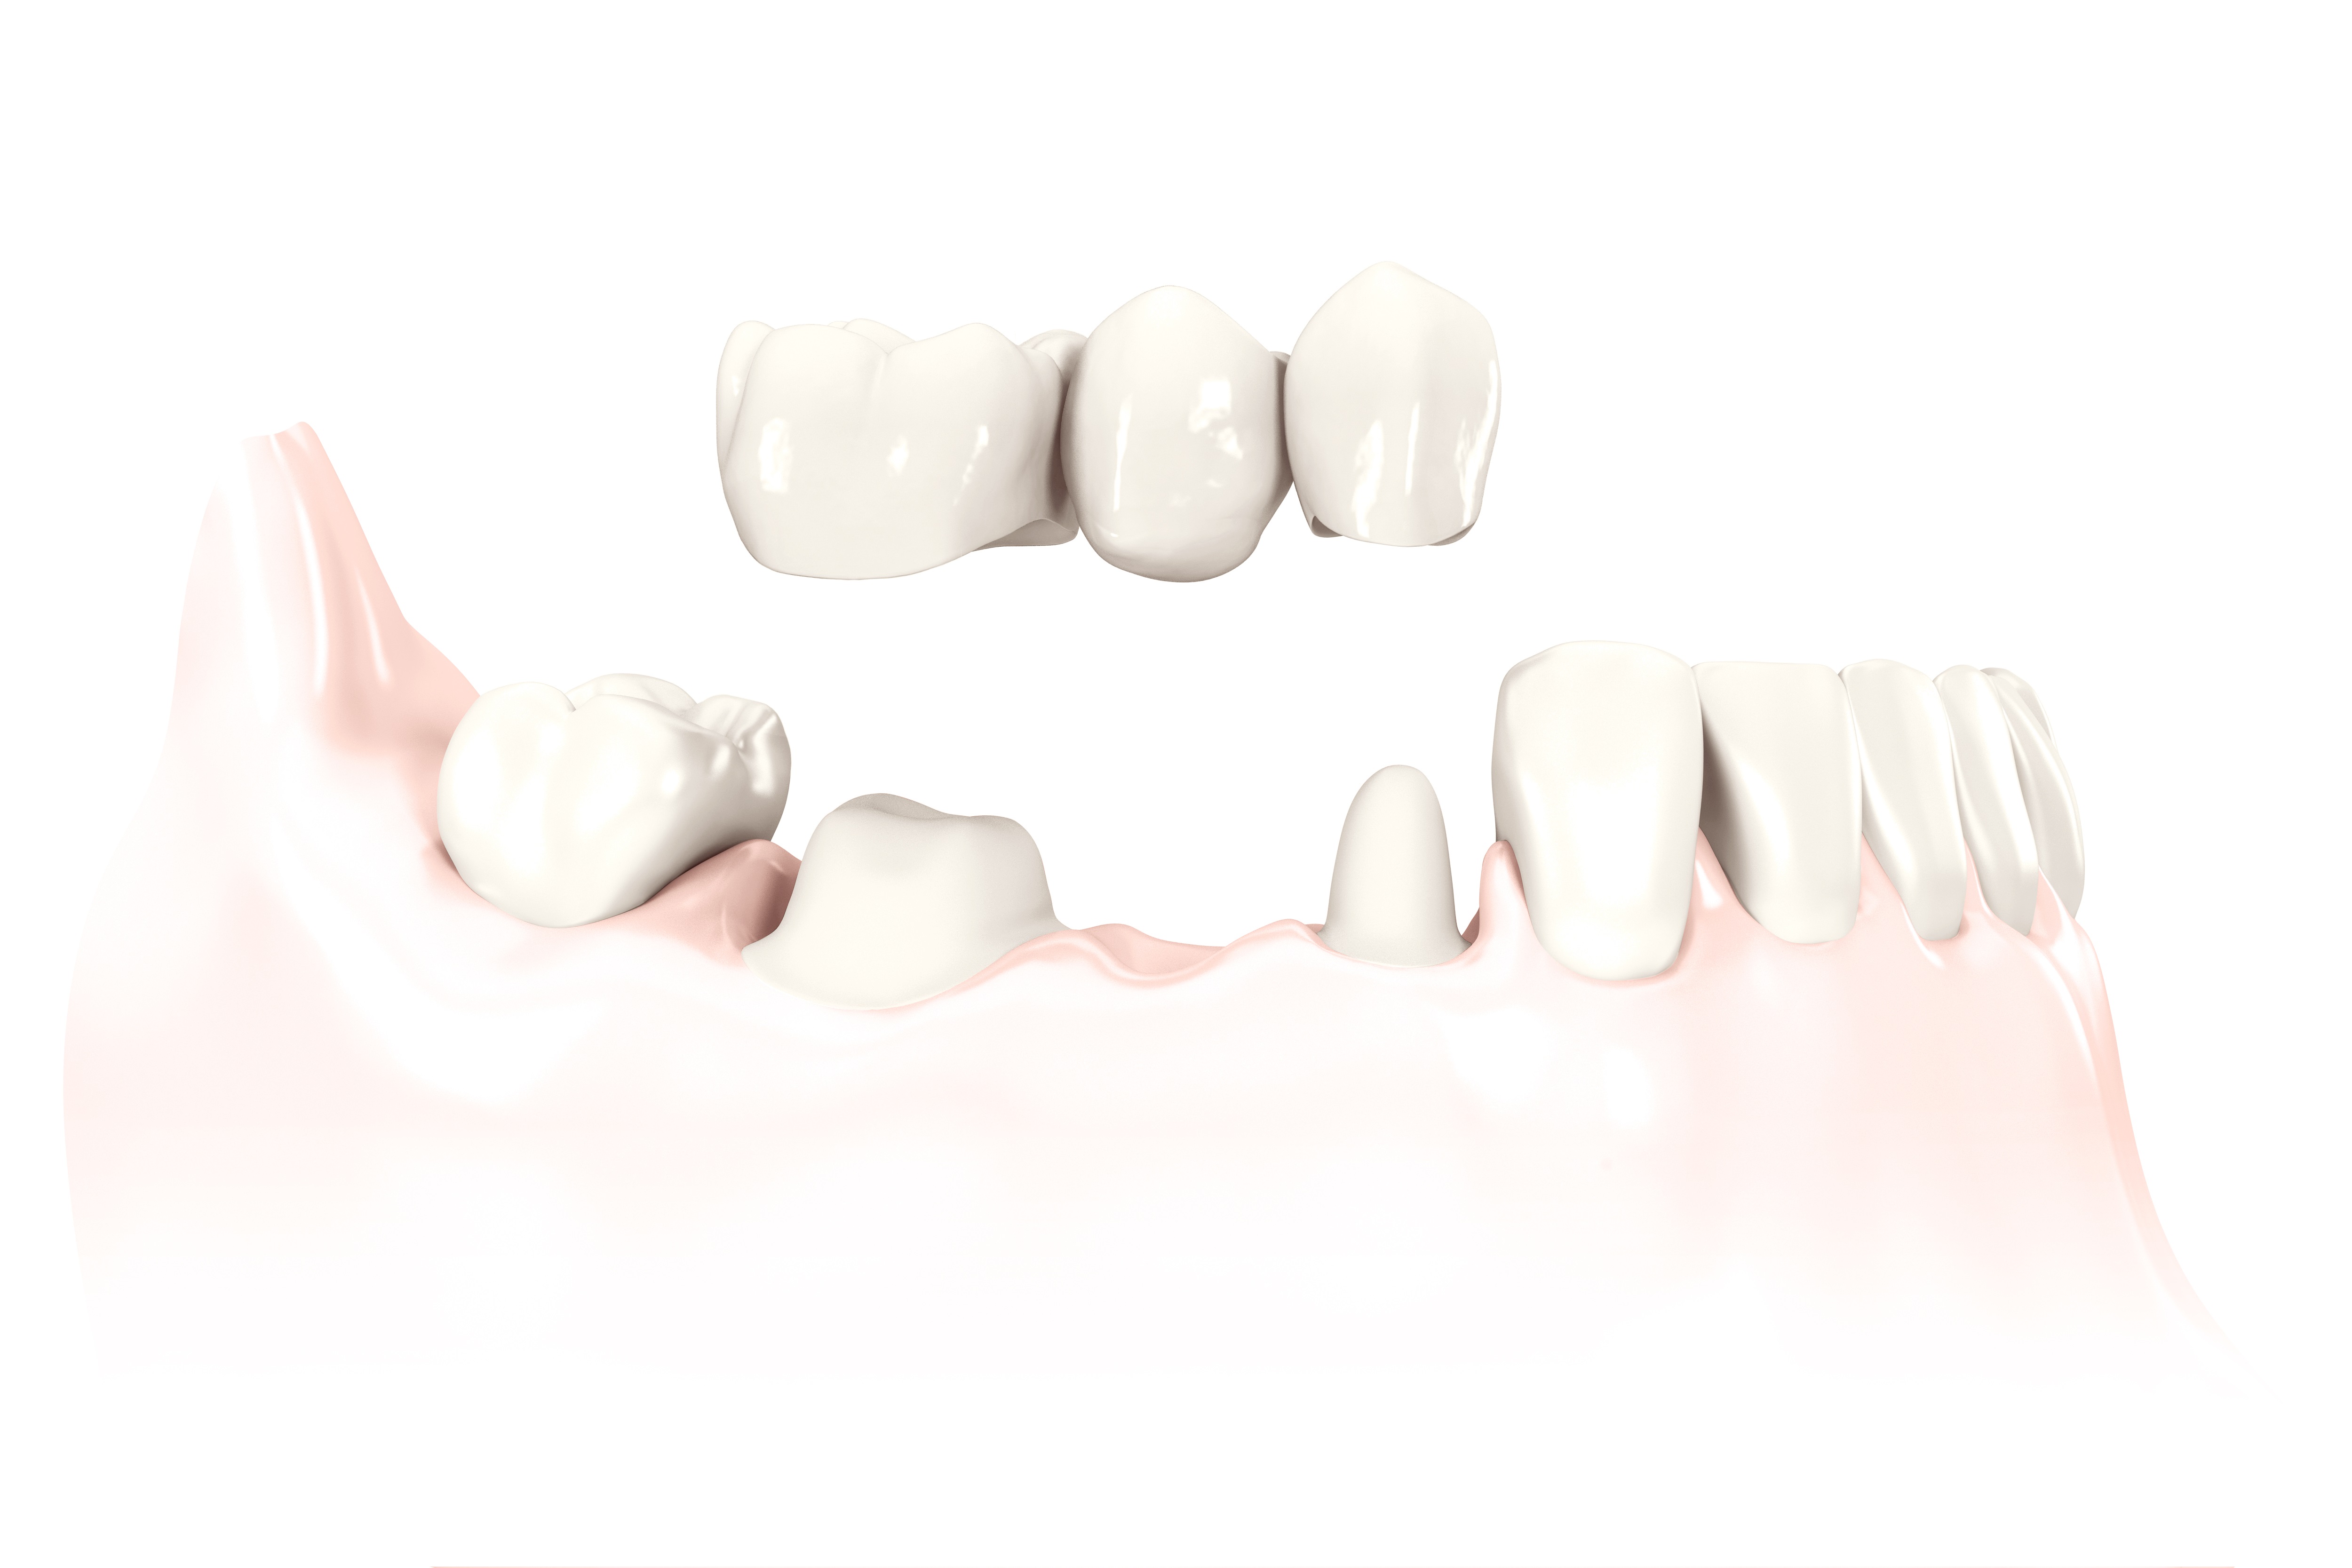 Porcelain bridge on the patient's own teeth